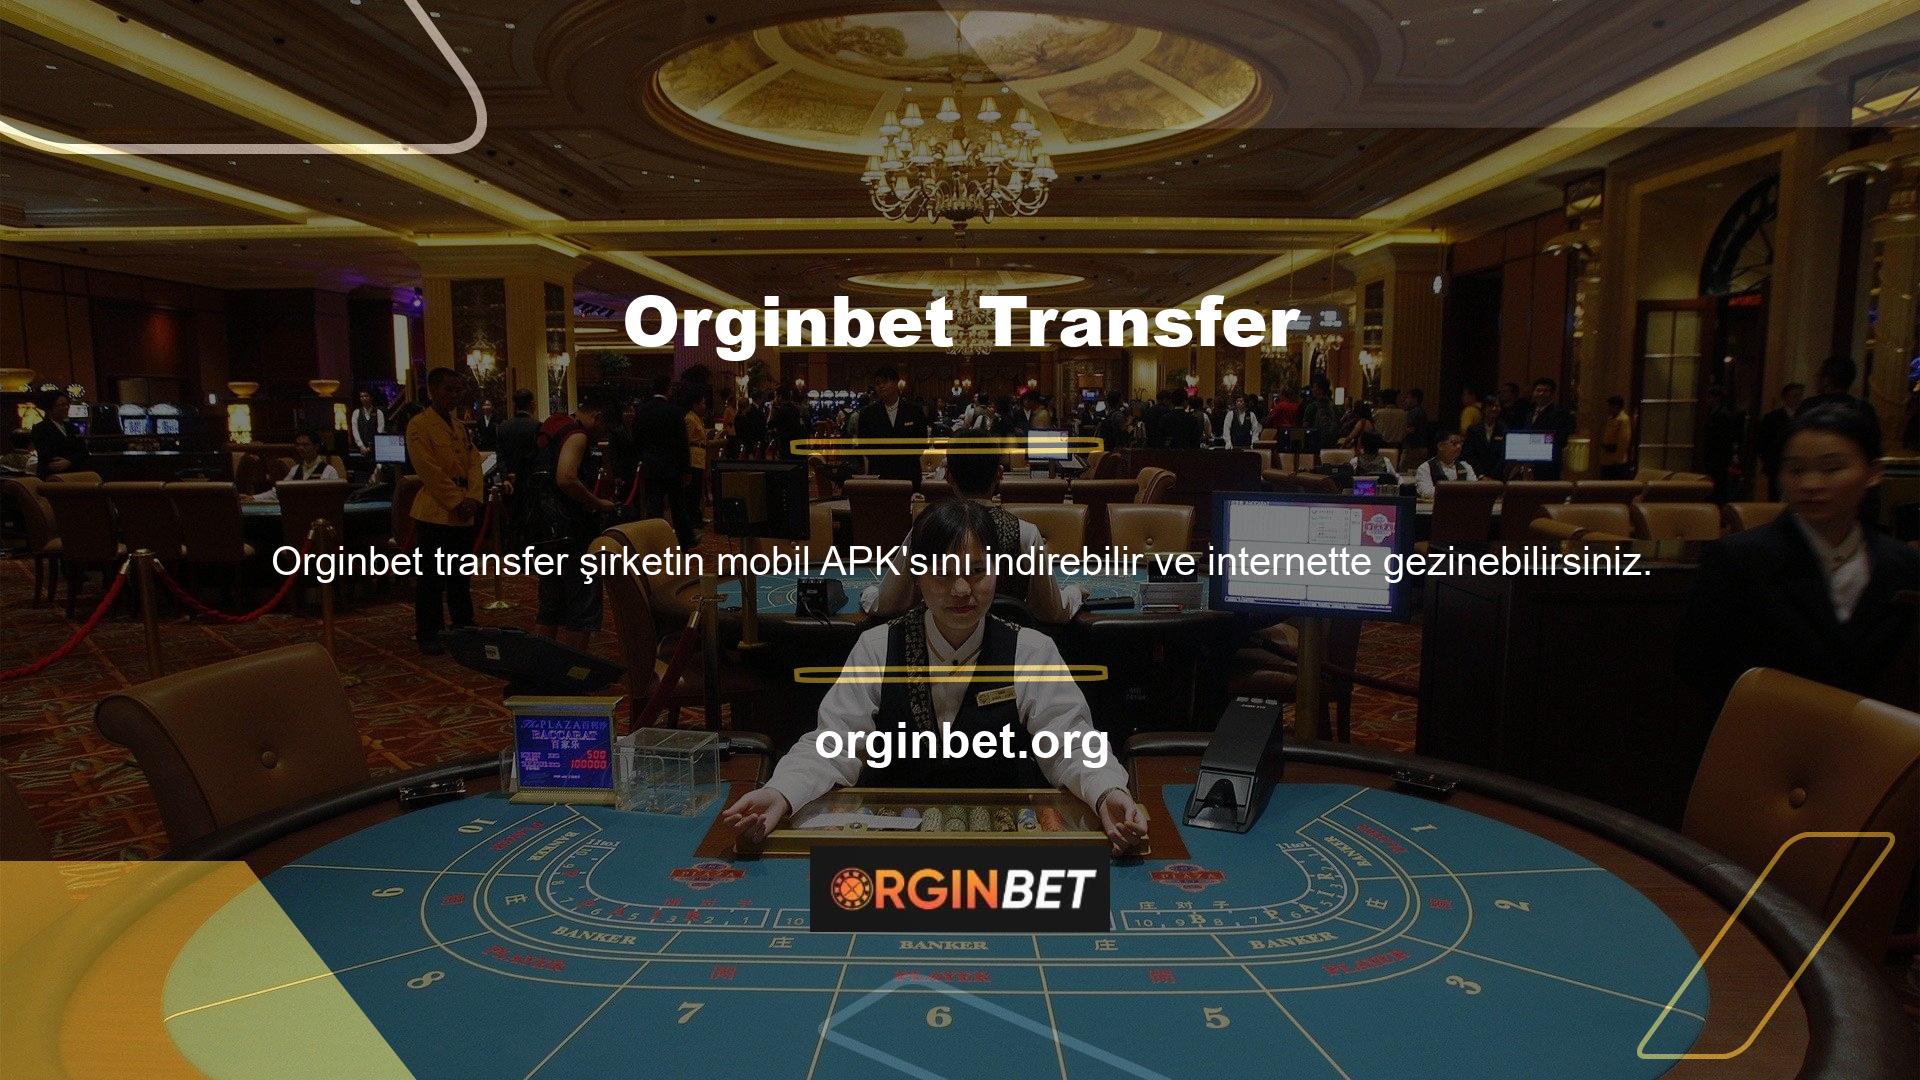 Orginbet Transfer Company yatırım yöntemini kullanmanız gerektiğinden, canlı bahis ve casino, espor oyunları, canlı slot ve casinolar, bingo oyunları, video oyunları, sanal oyunlar ve daha fazlasını sunuyoruz